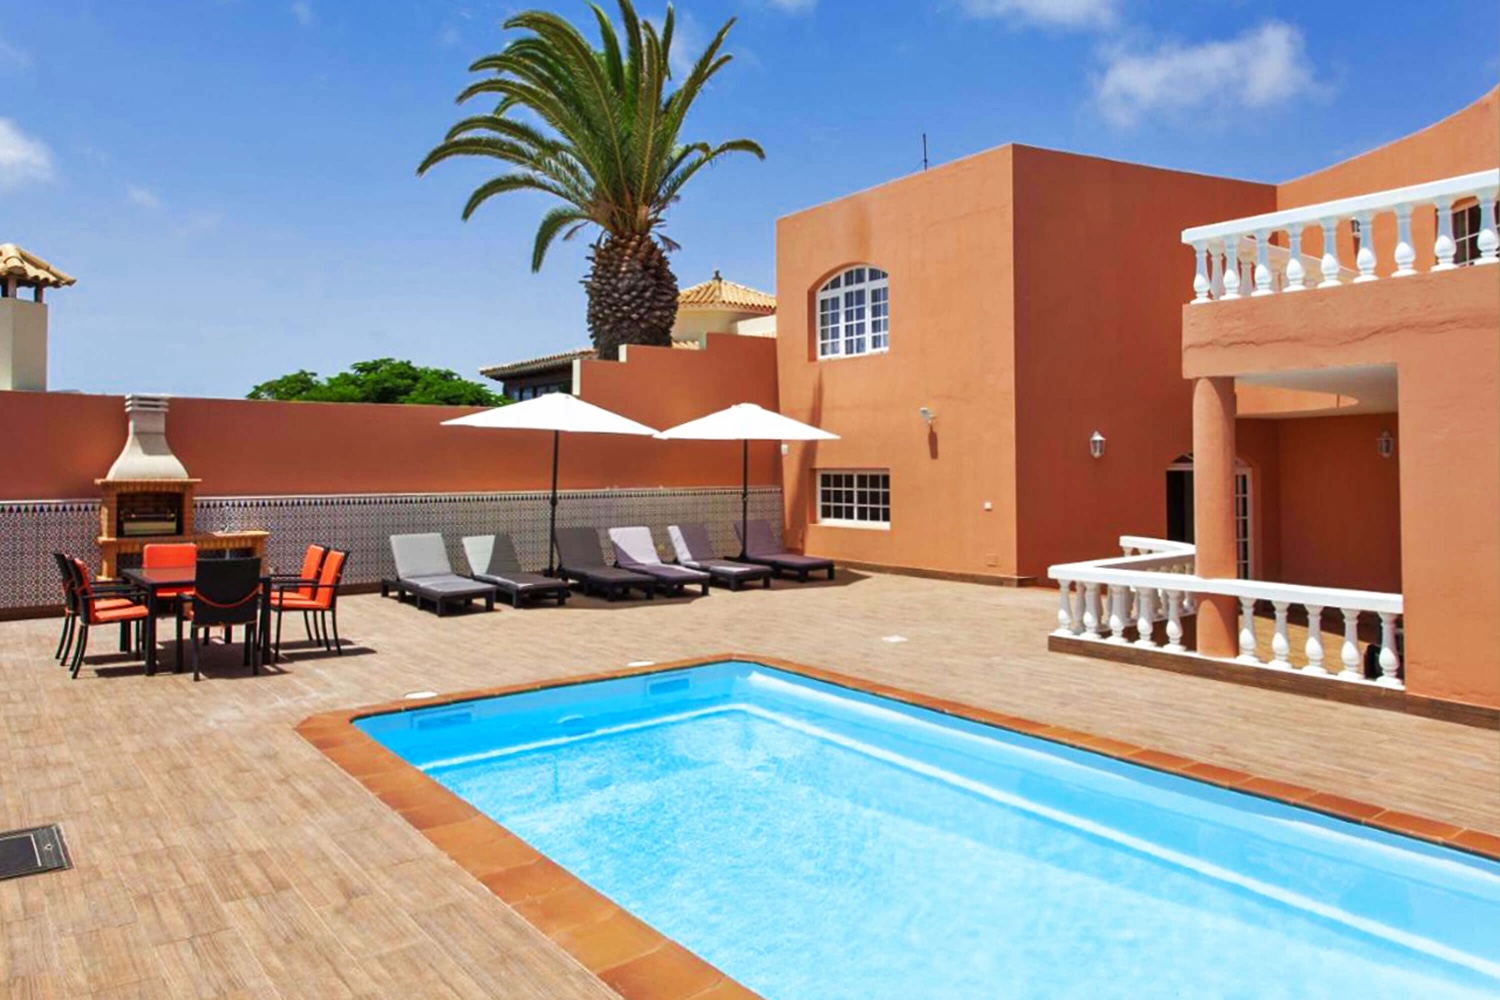 Modernes Ferienhaus mit Privatpool für einen entspannten Strandurlaub in Caleta de Fuste